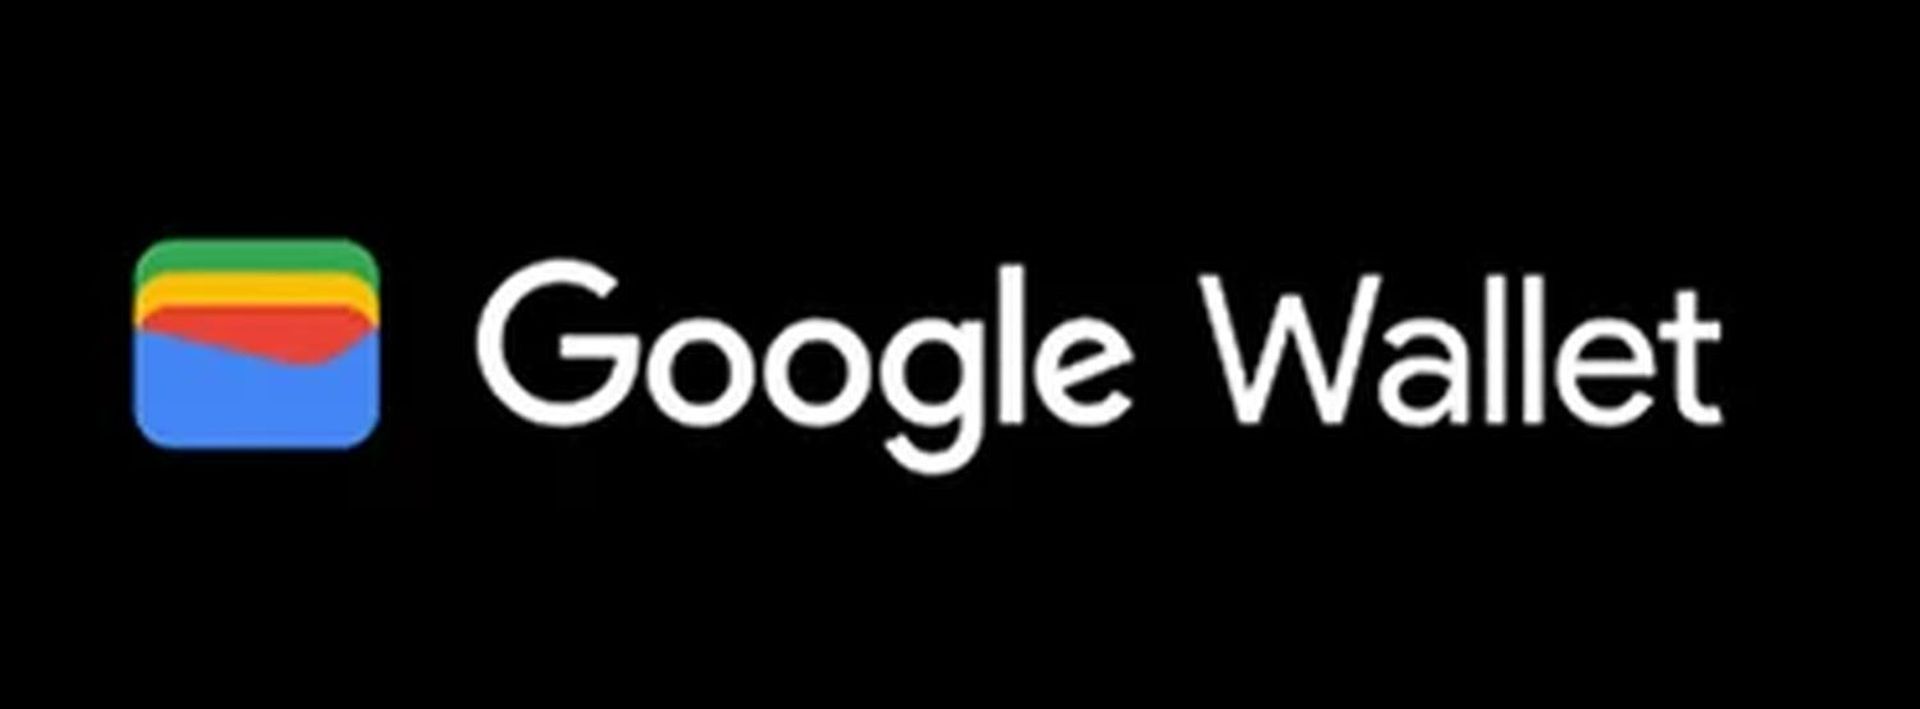 ស្វែងយល់ពីមូលហេតុដែល Google Wallet មិនដំណើរការជាមួយការណែនាំដ៏ទូលំទូលាយរបស់យើង! ដូចគ្នានេះផងដែរ, មានជម្រើស Google Wallet ដែលមានតម្លៃសាកល្បង។ រុករកឥឡូវនេះ!